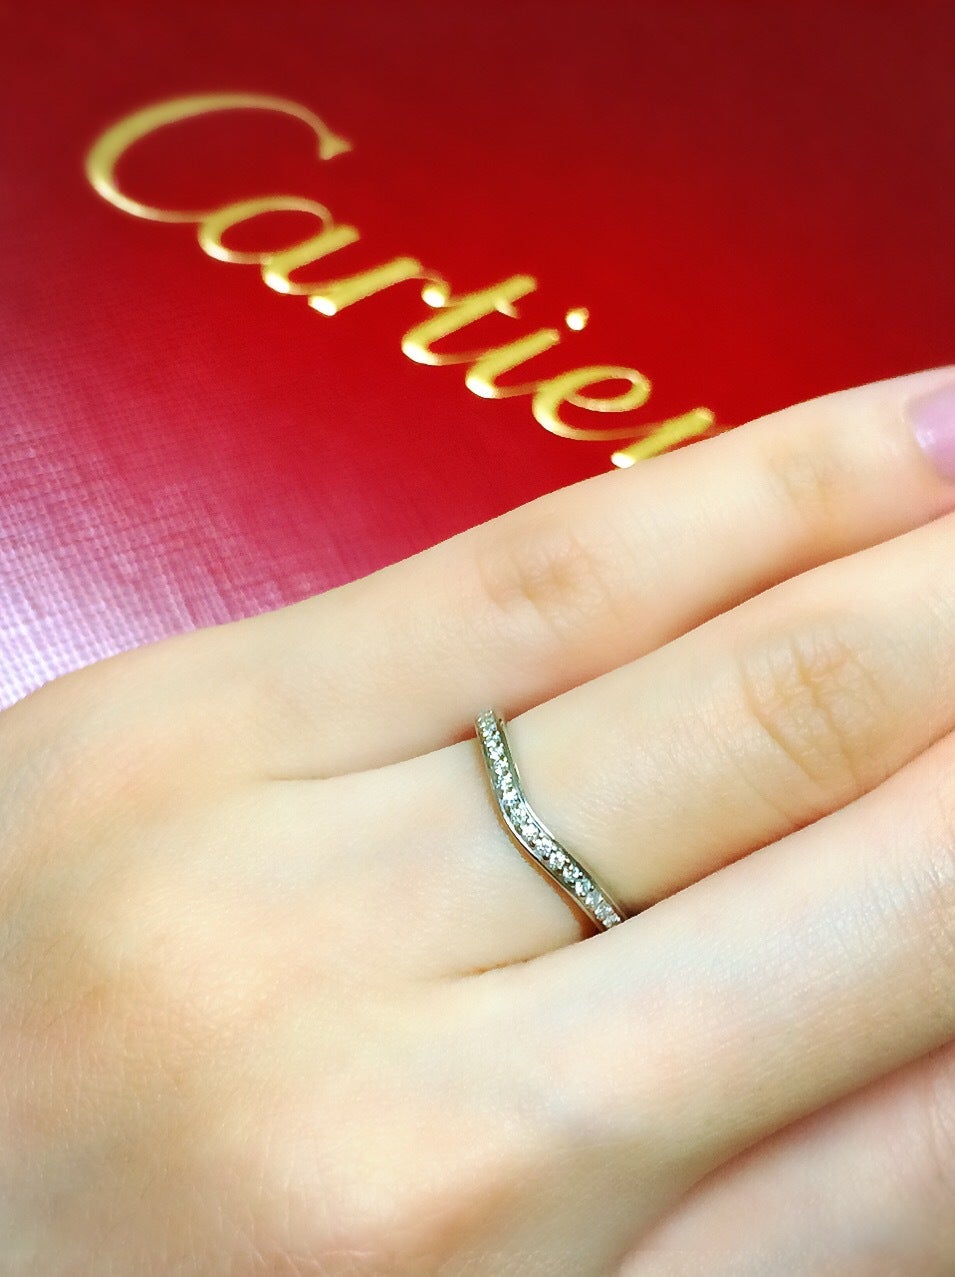 カルティエ♡バレリーナ♡ハーフエタニティ♡   カルティエで結婚指輪